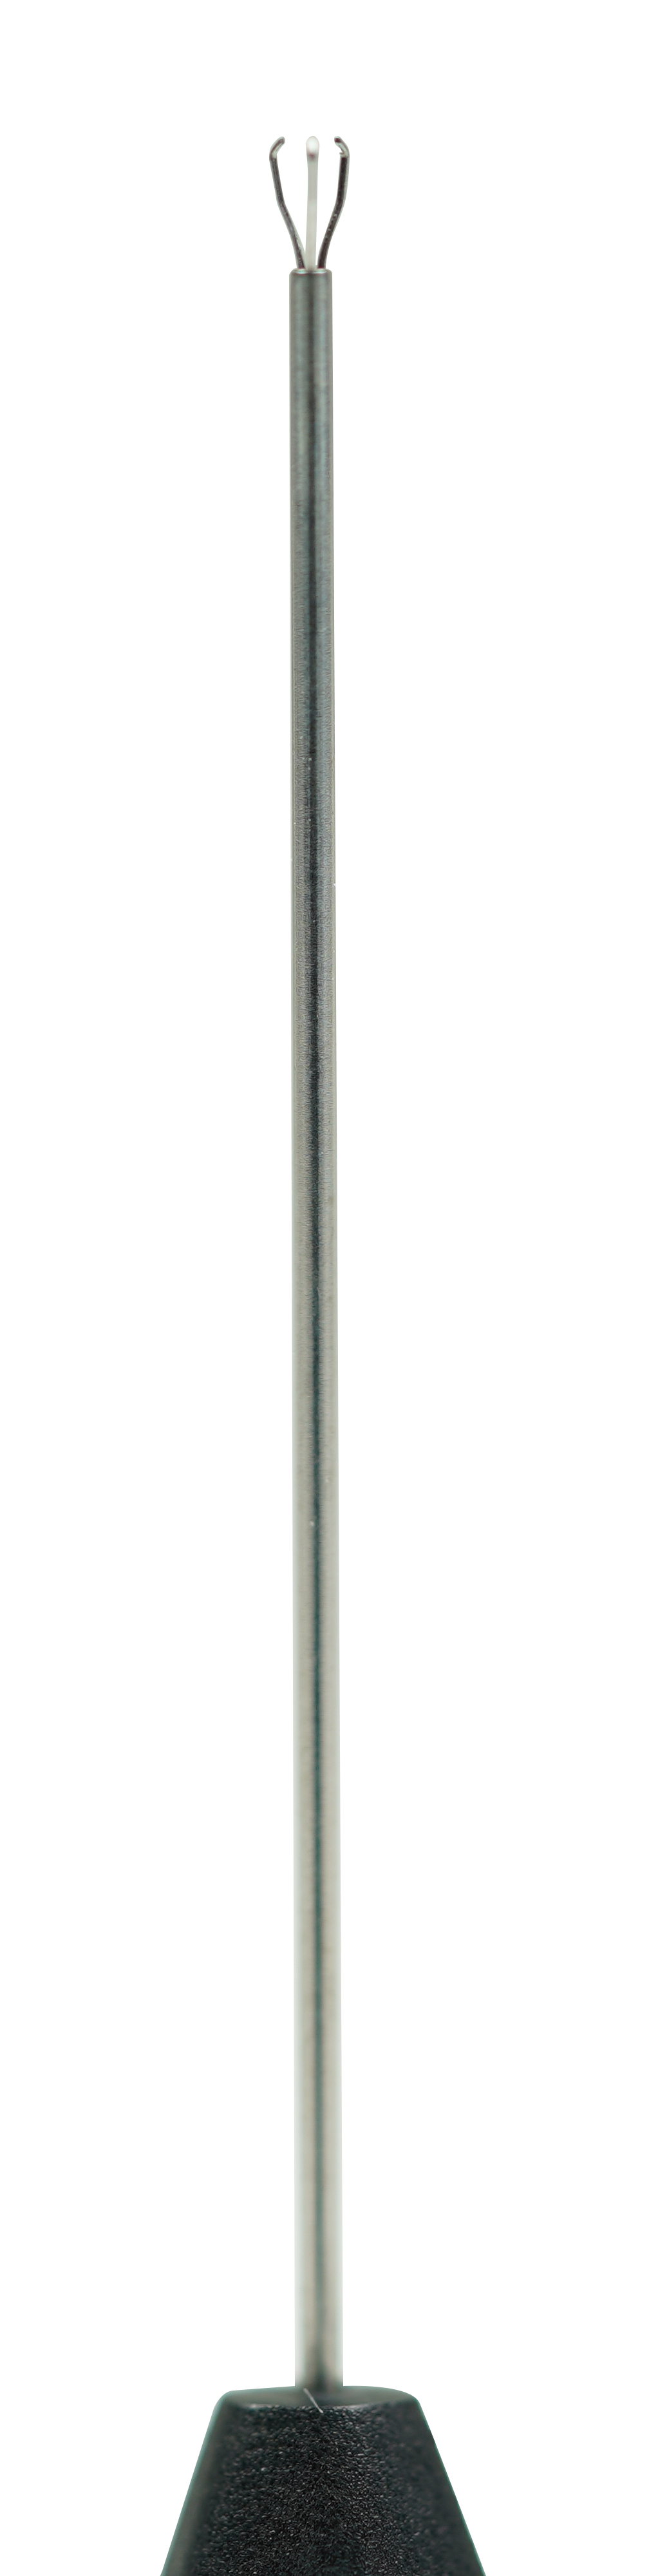 UN-3011(20G) Stainless Steel Triangular Gripping Forceps